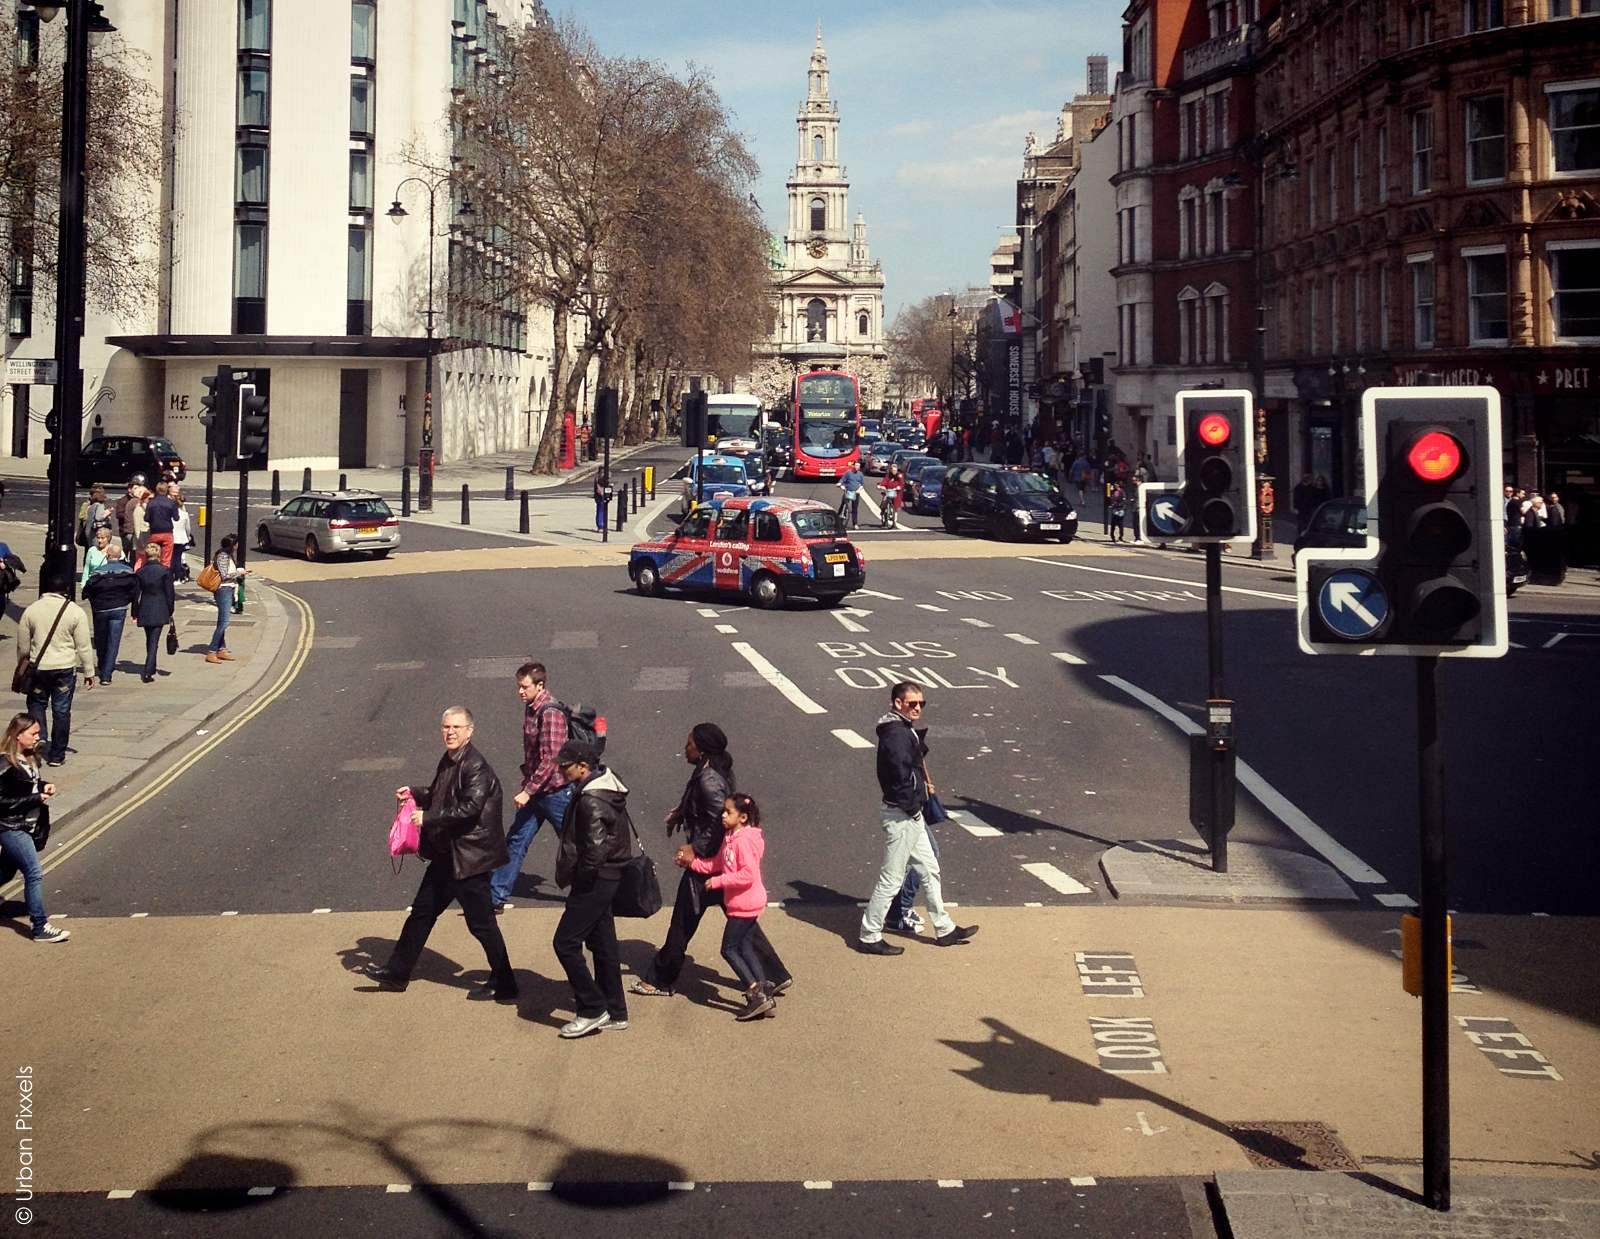 Crossing the street in London